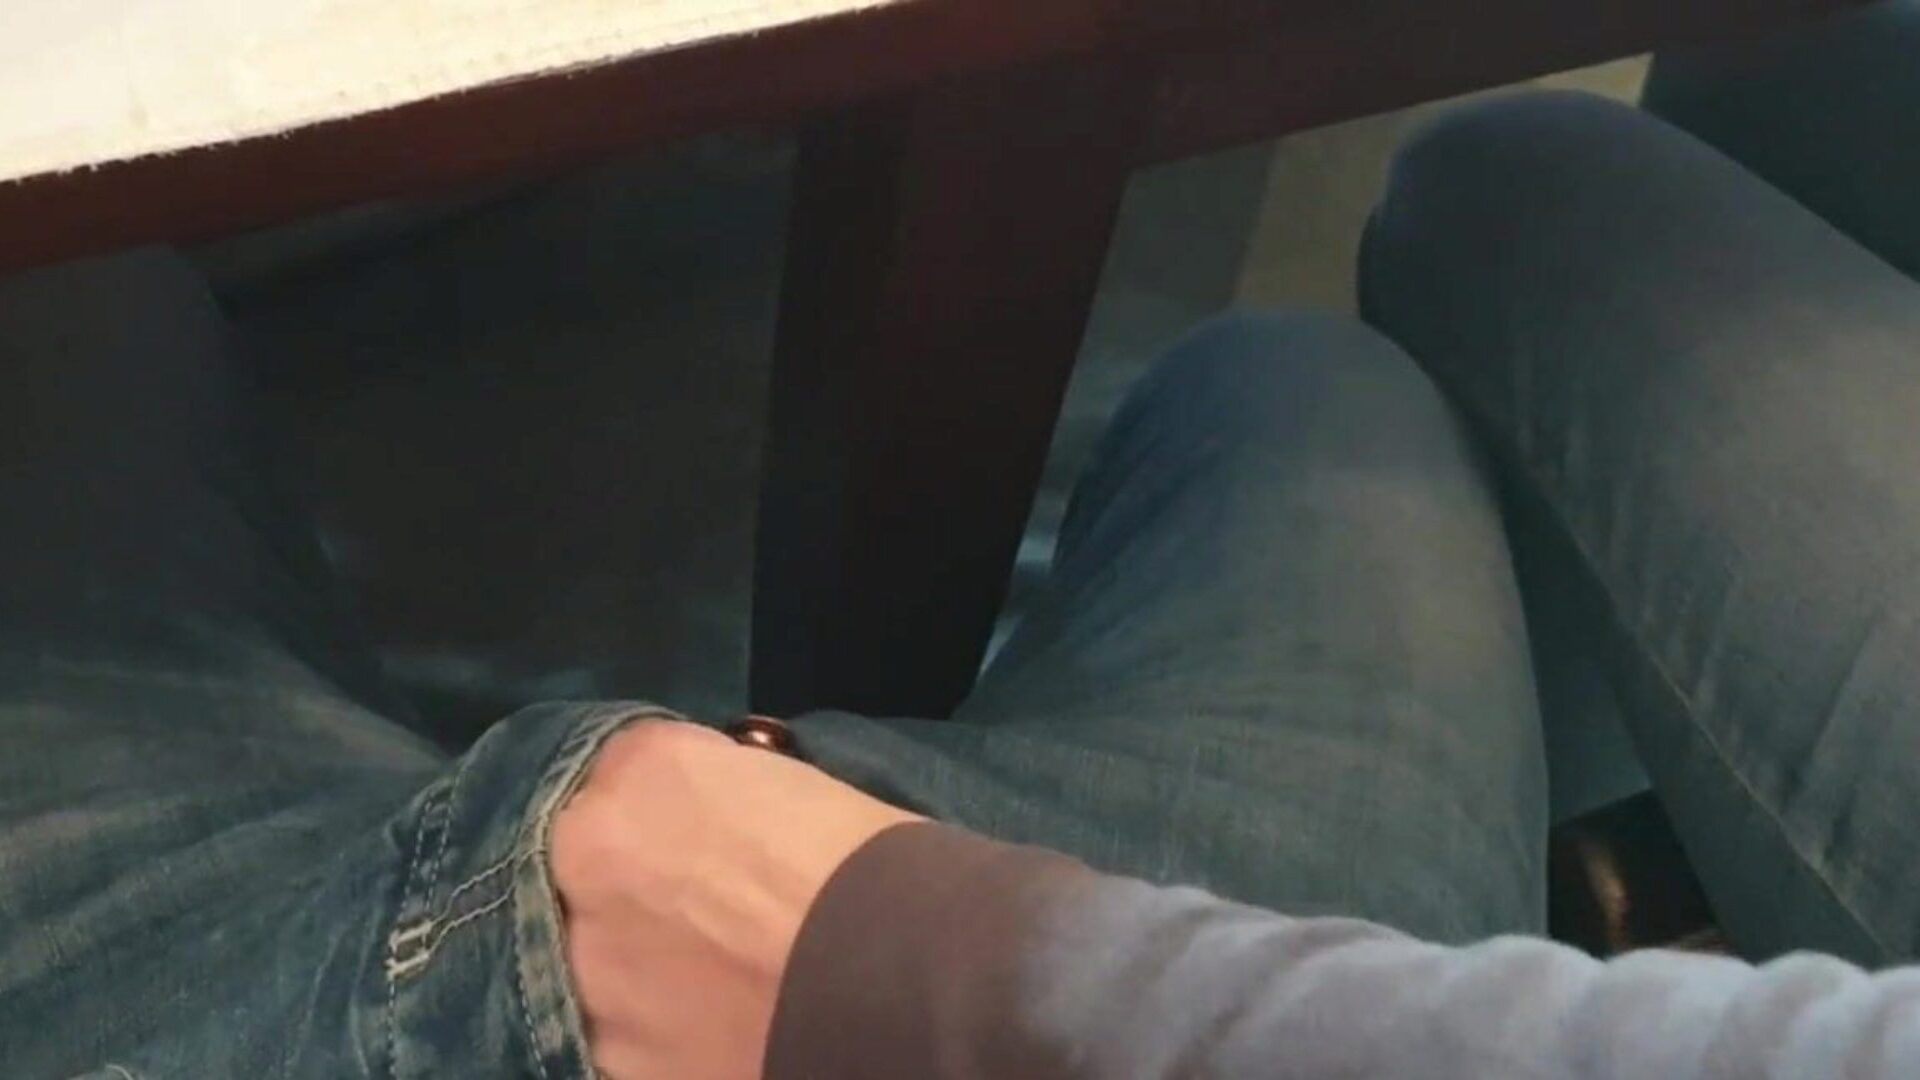 lärare rycker av studentens kuk på universitetet ... se läraren ryker av en studentens kuk i universitetets klassrumsepisod på xhamster - det ultimata urvalet av gratis fransk offentlig handjob hd porn tube filmscener